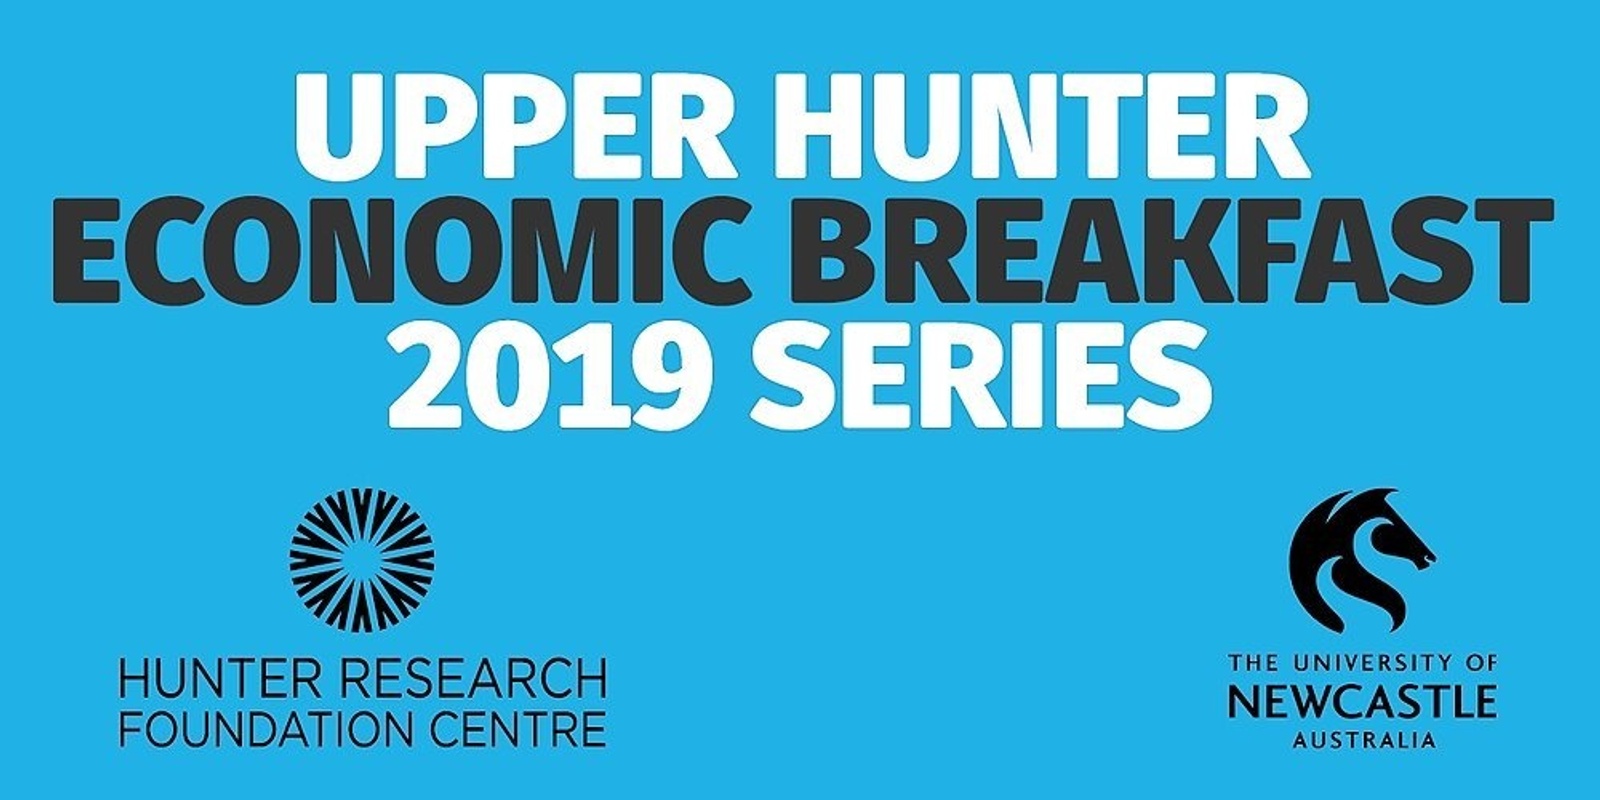 Banner image for 2019 Upper Hunter Economic Breakfast Series - 10 April 2019